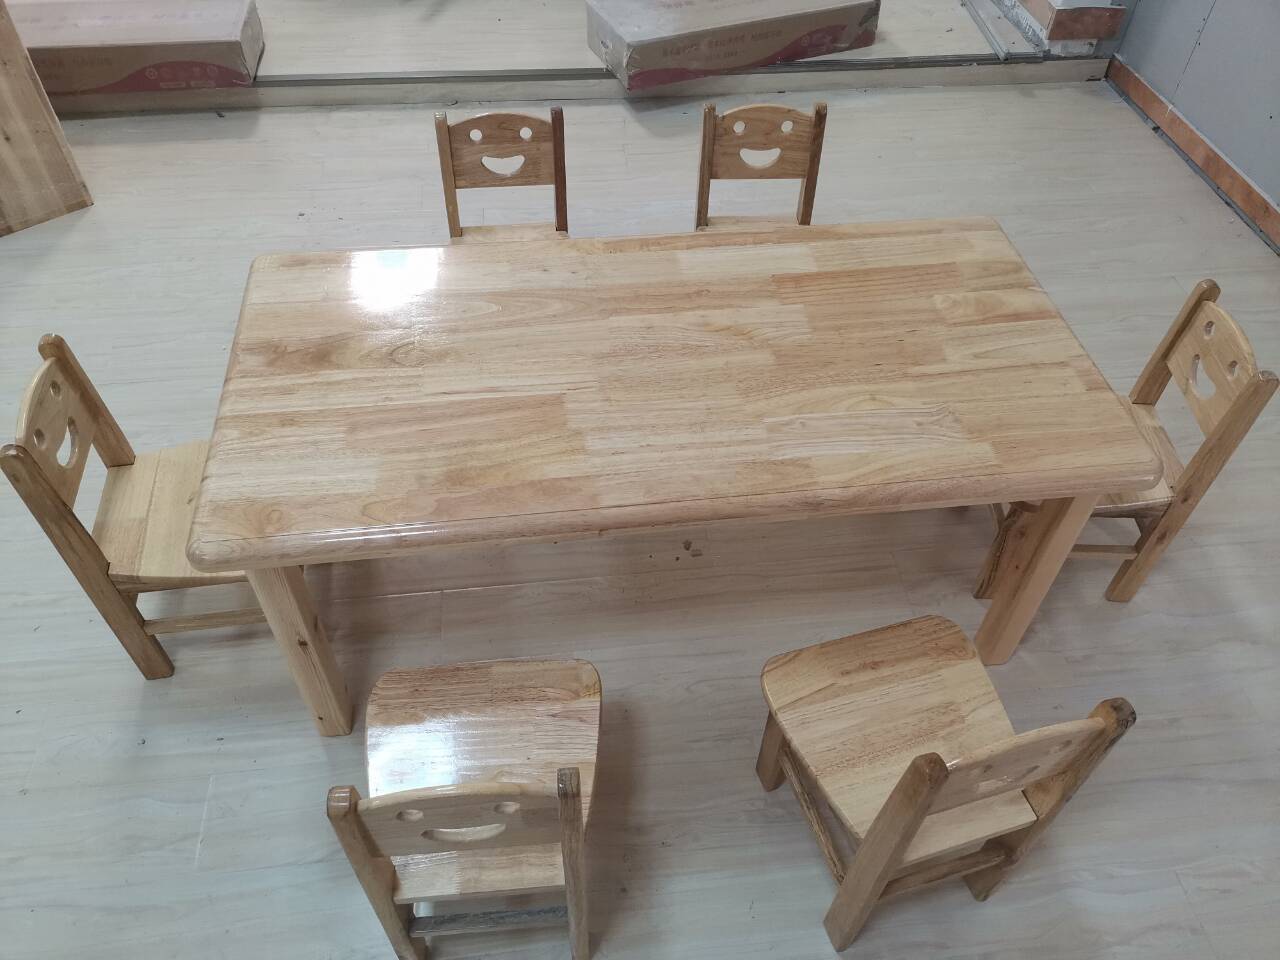 江西厂家供应儿童木质桌椅